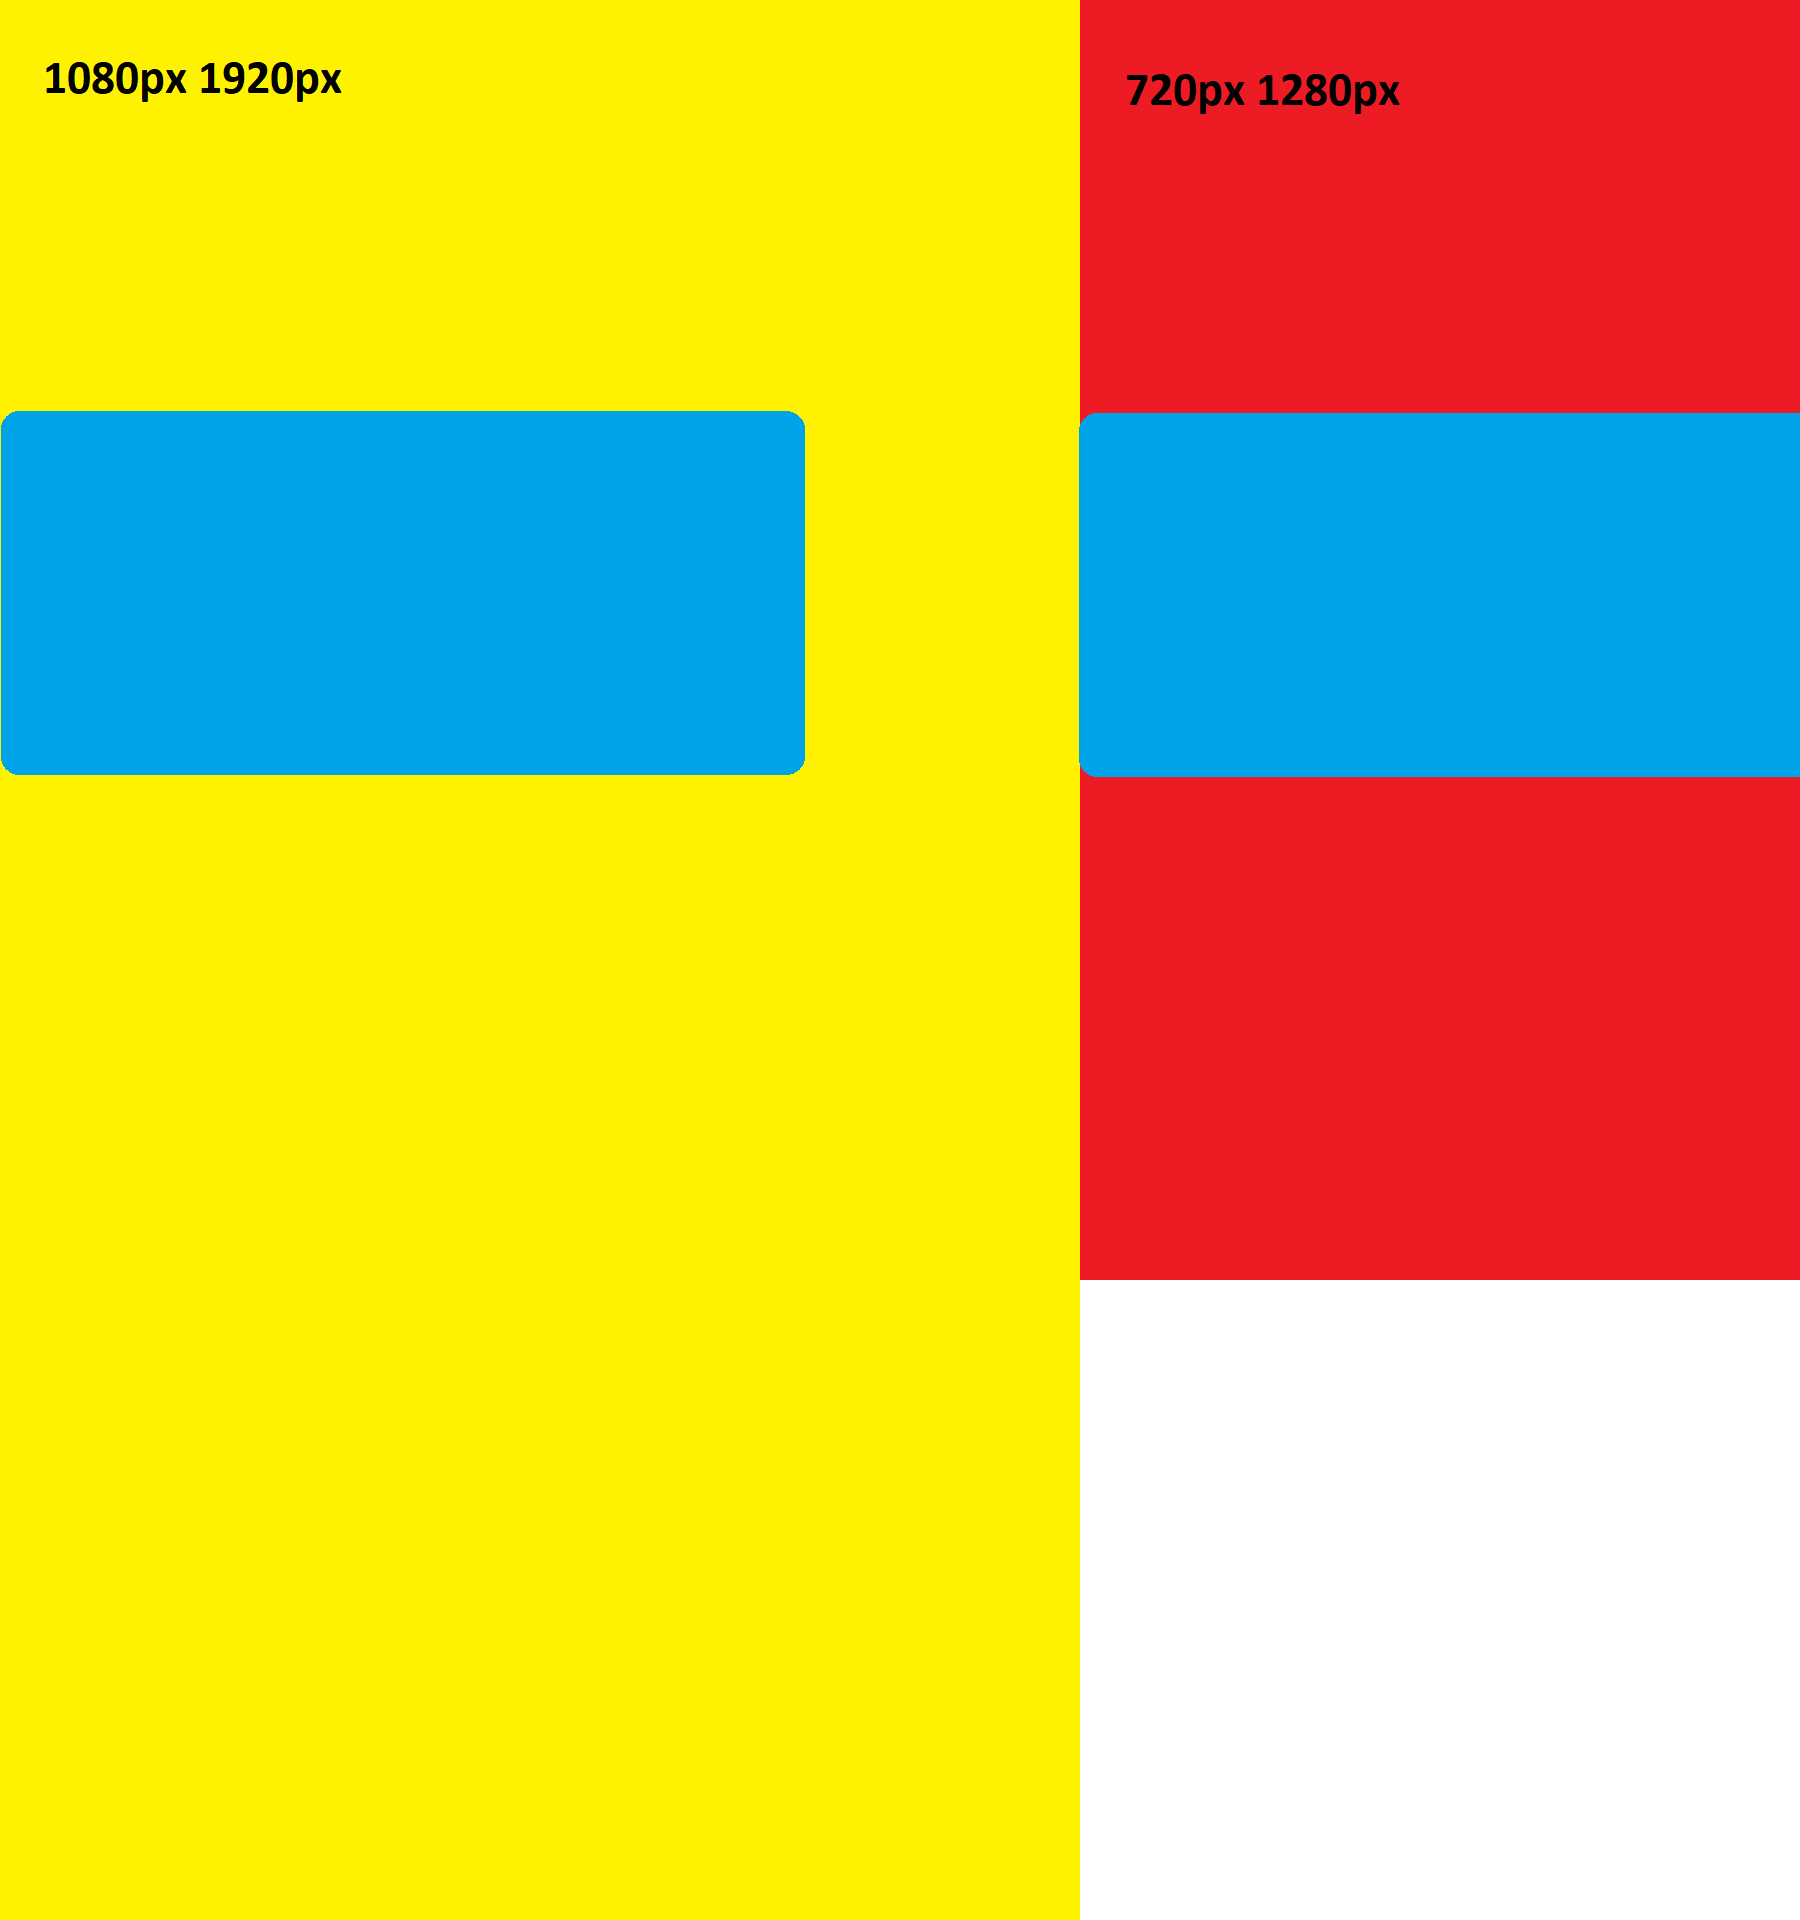 Na imagem, ao lado esquerdo, há um retângulo amarelo, em pé, com um texto escrito "1080px 1920px" e, dentro dele, há um retângulo de bordas arredondadas de cor azul, ocupando um pouco mais da metade da largura. Ao lado direito, um retângulo menor de cor vermelha em pé com o texto escrito "720px 1280px" e com um retângulo de bordas arredondadas de cor azul ocupando uma largura maior do que o retângulo vermelho.